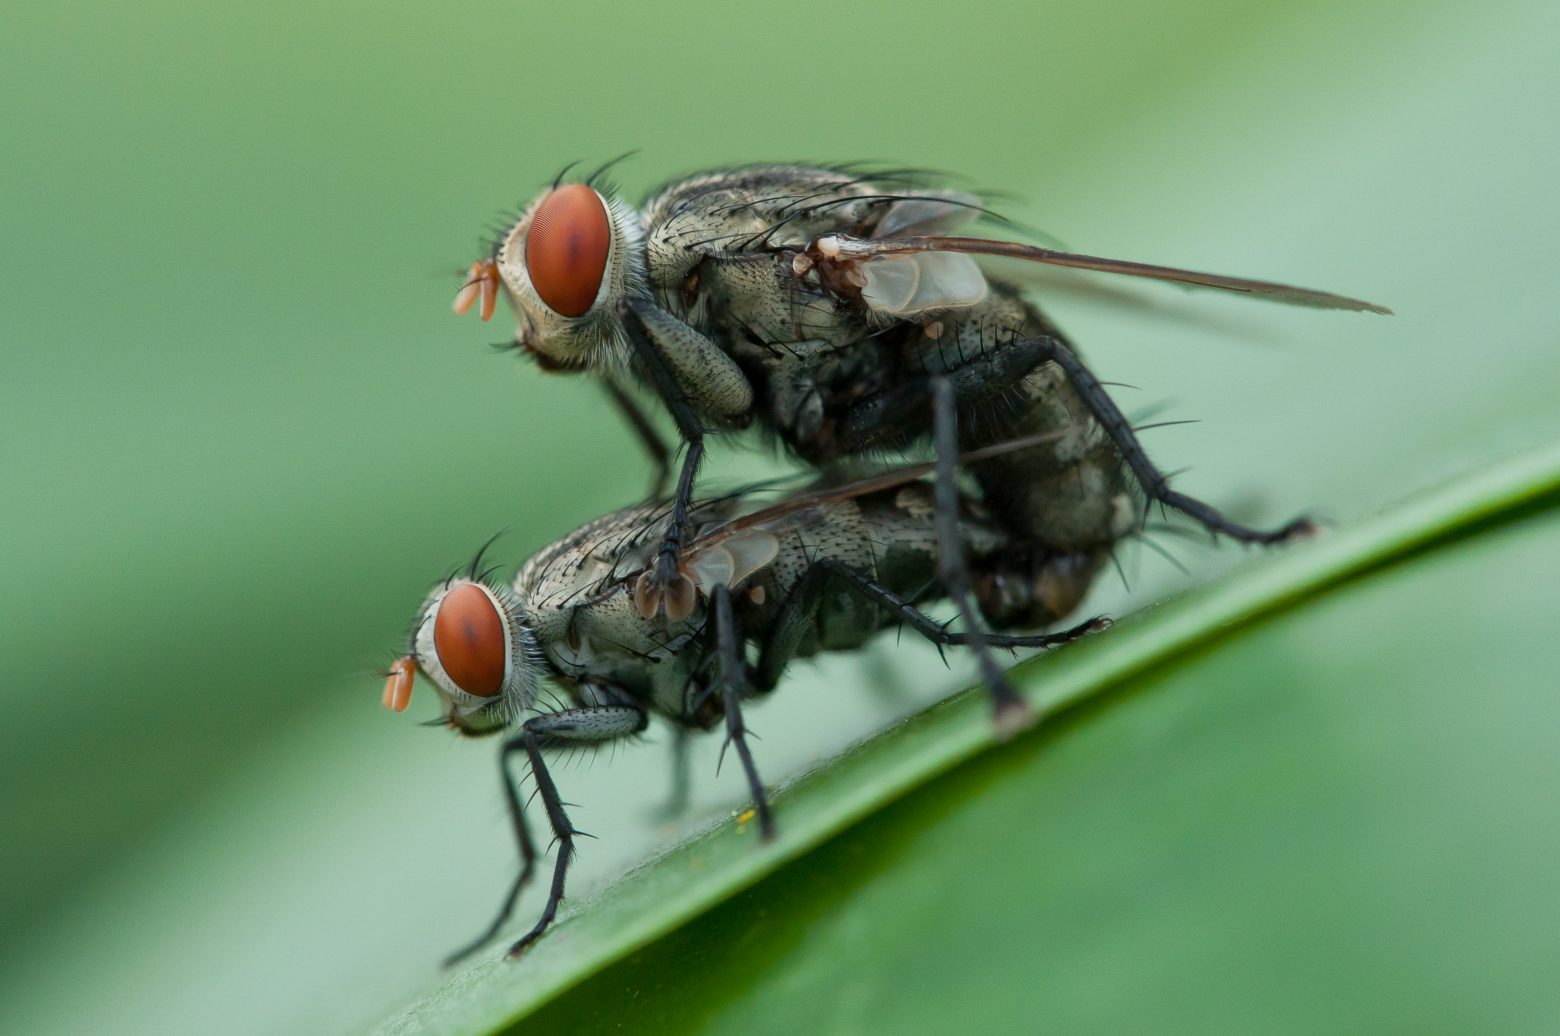 Πεινασμένες για έρωτα: Γιατί οι καλοταϊσμένες μύγες έχουν όρεξη για σεξ